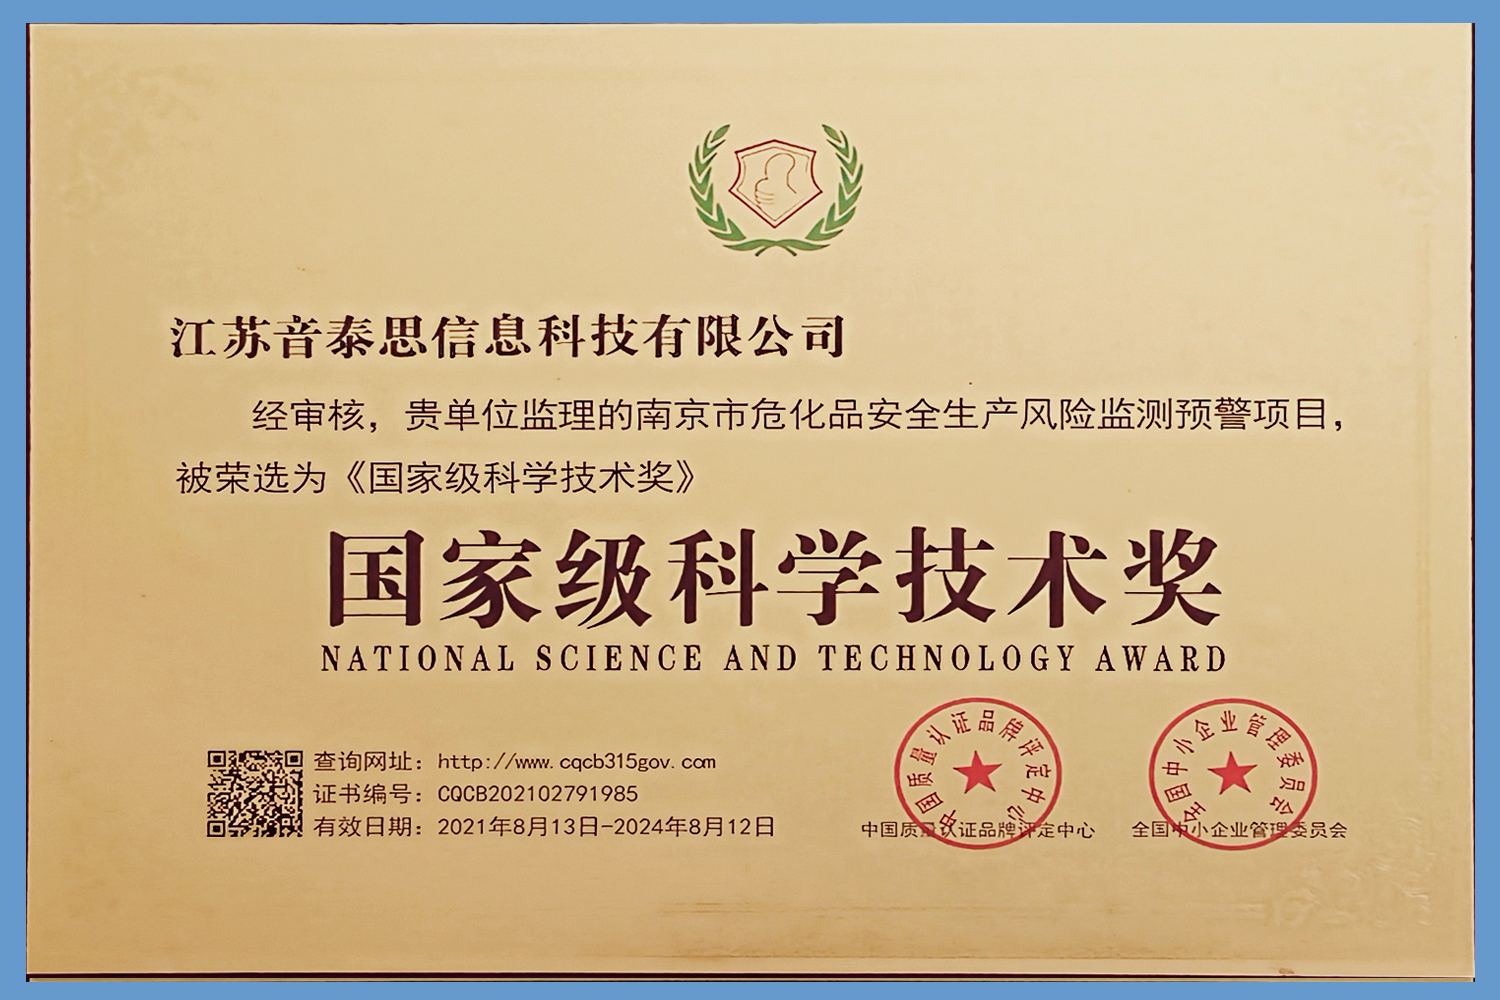 国家级科学技术奖